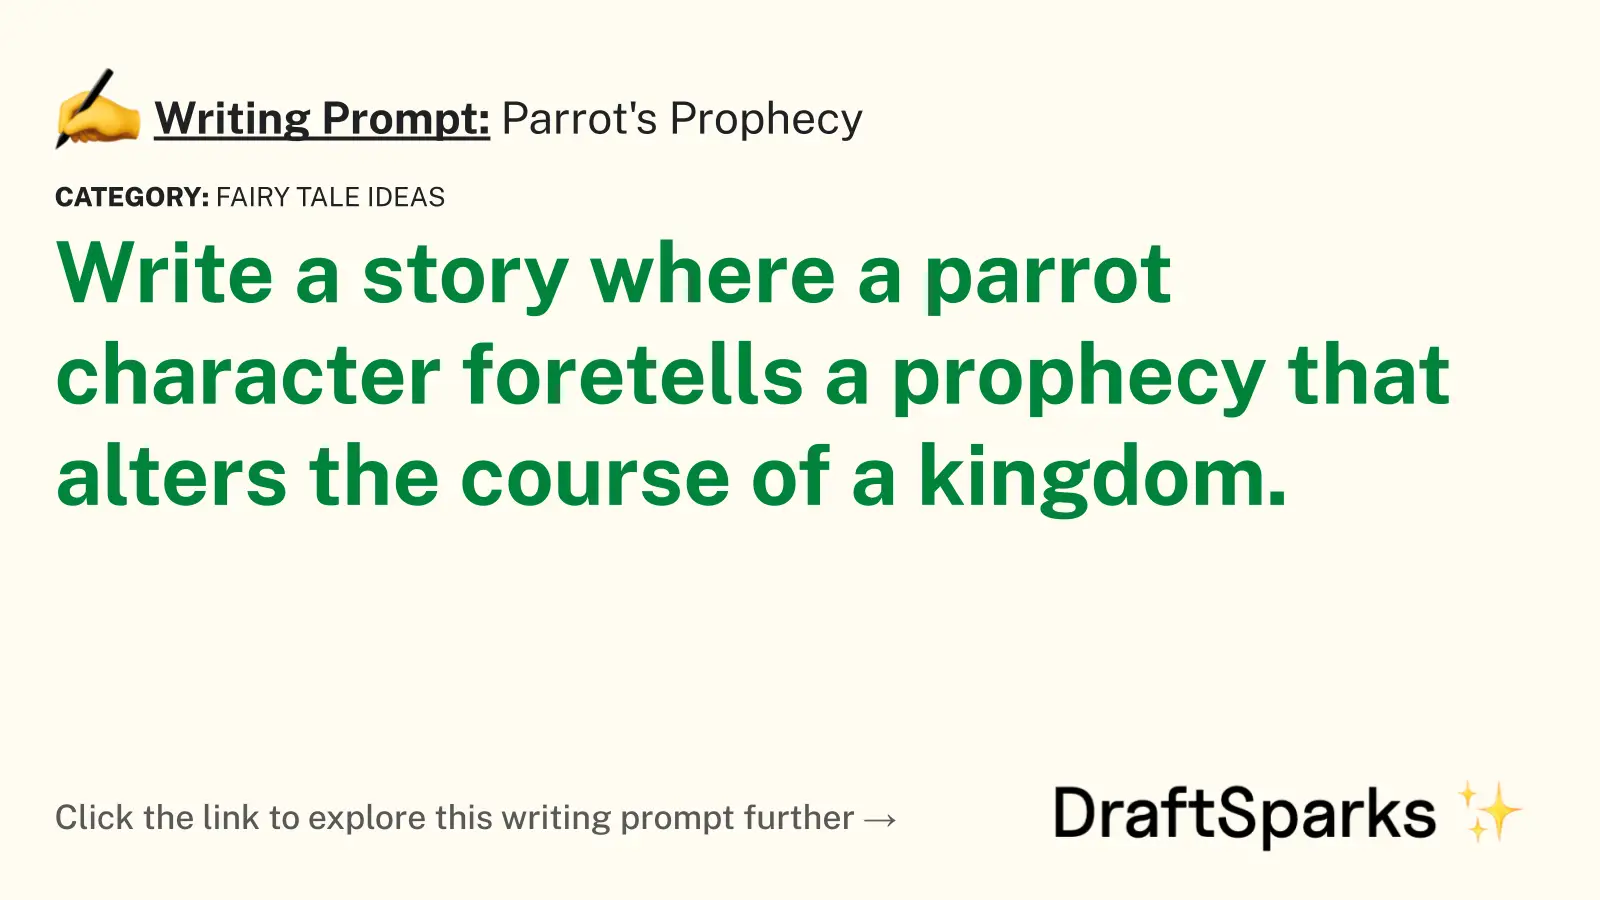 Parrot’s Prophecy